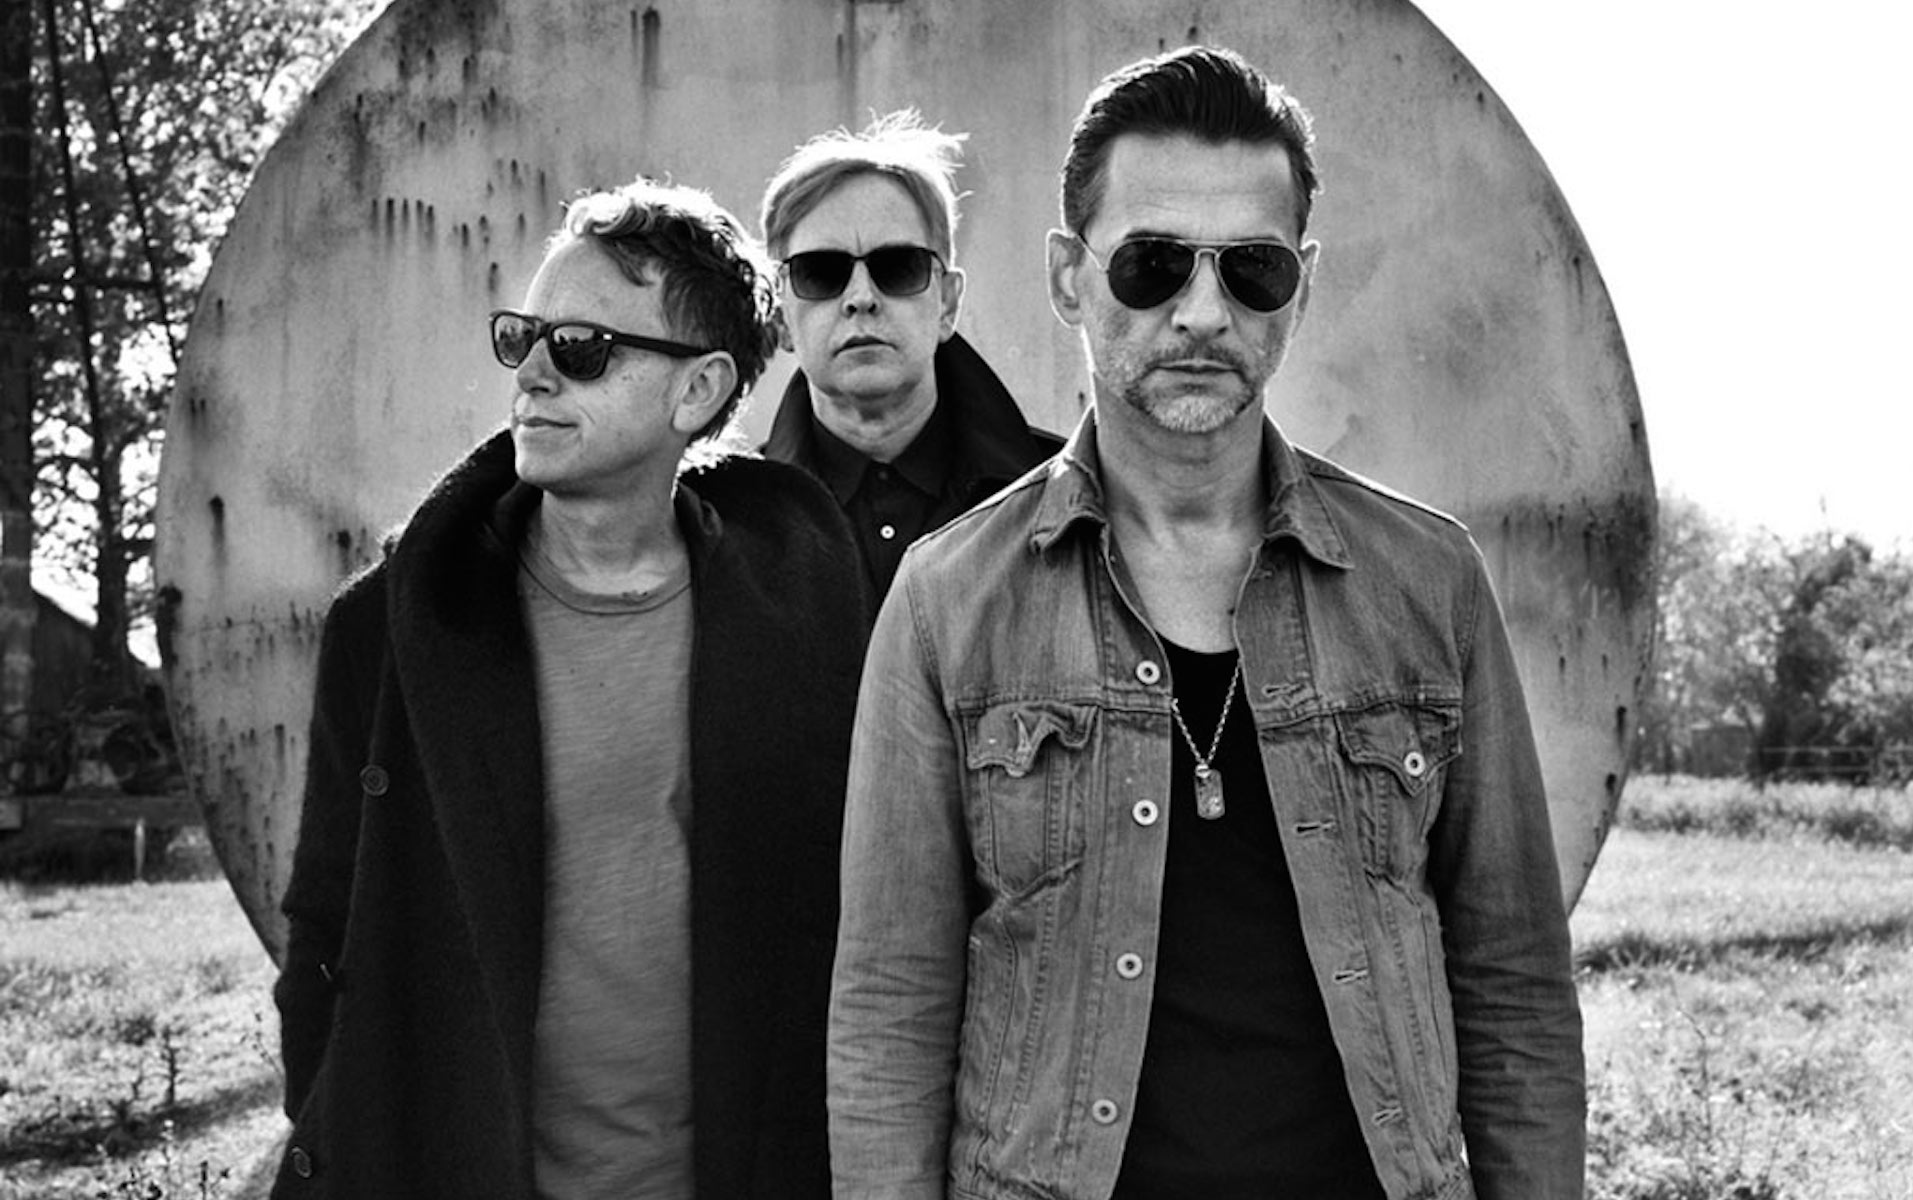 depeche mode spirit tour review